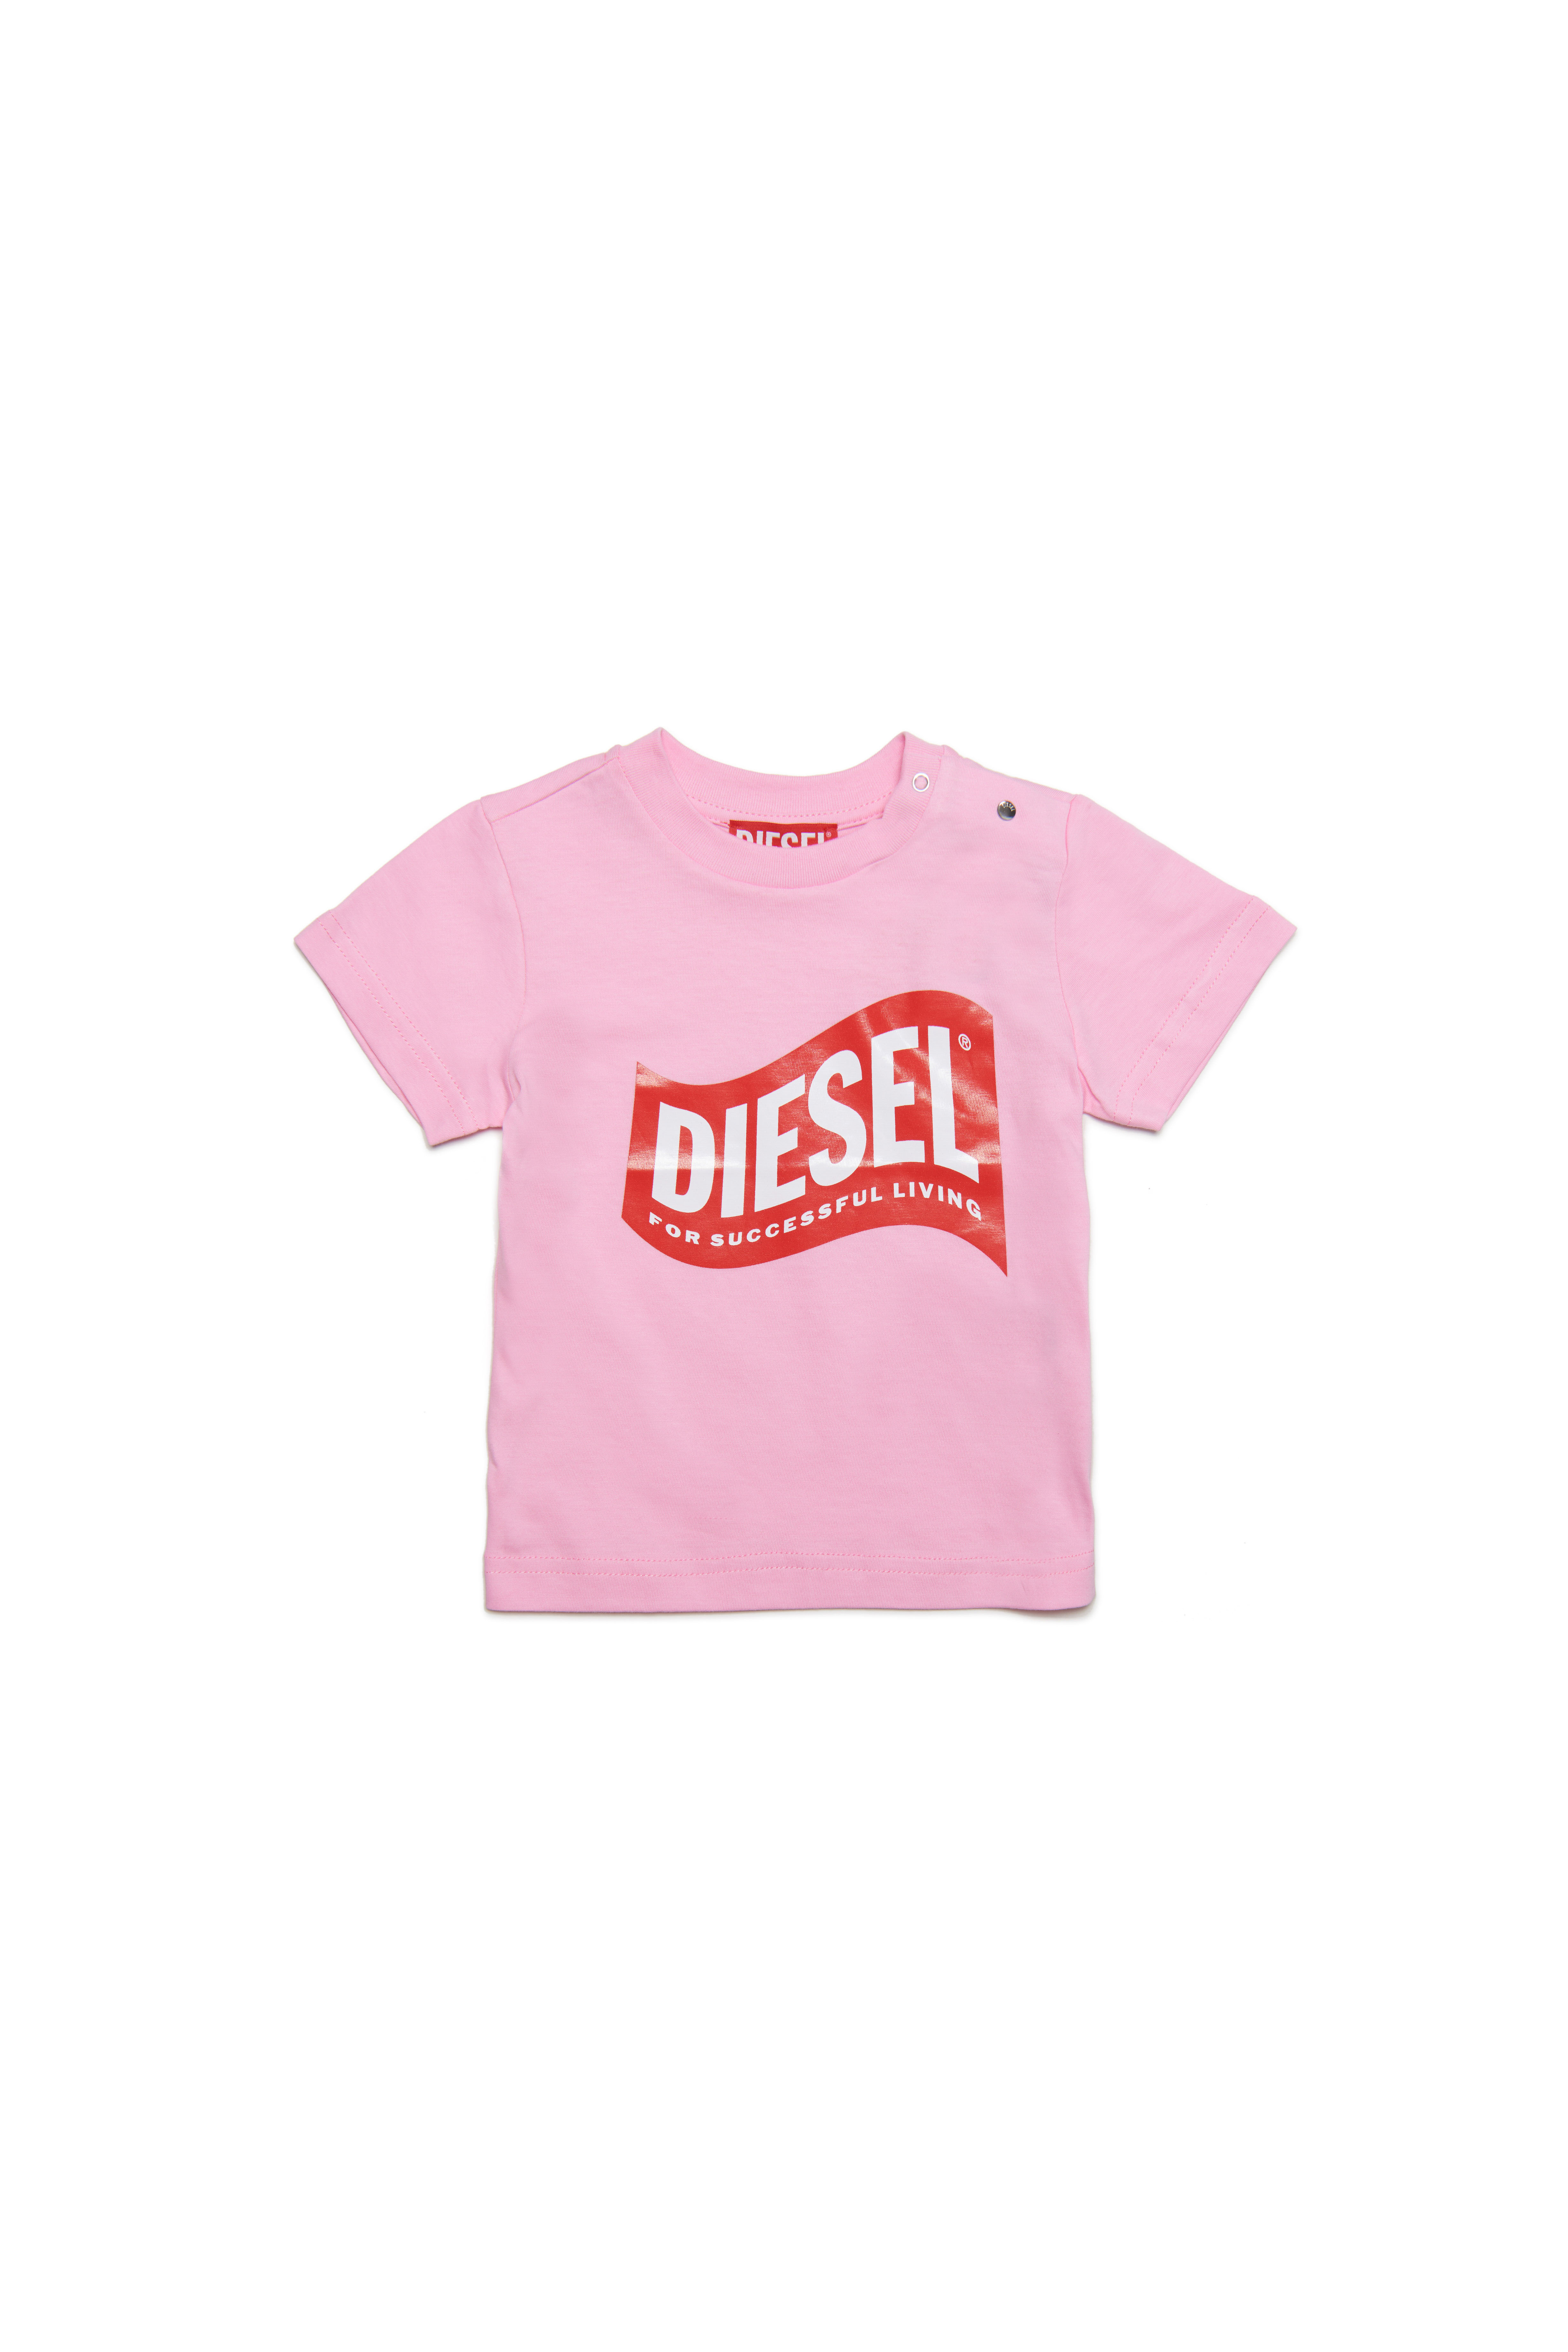 Diesel - TLINB, Pink - Image 1